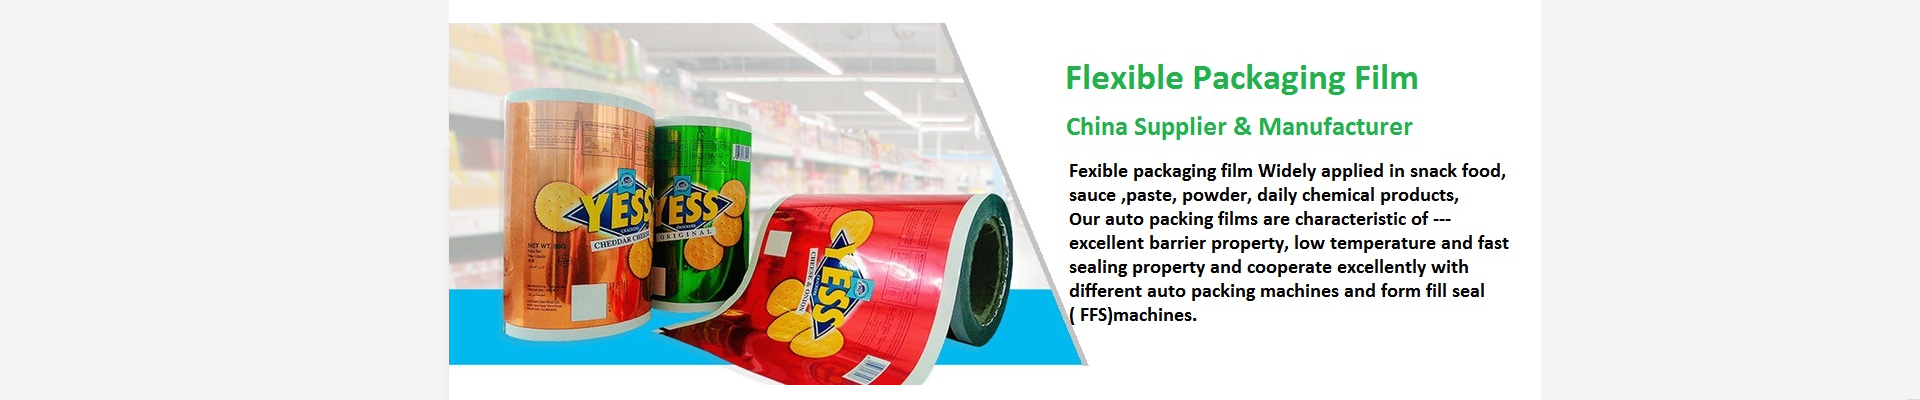 Flexible Packaging Film